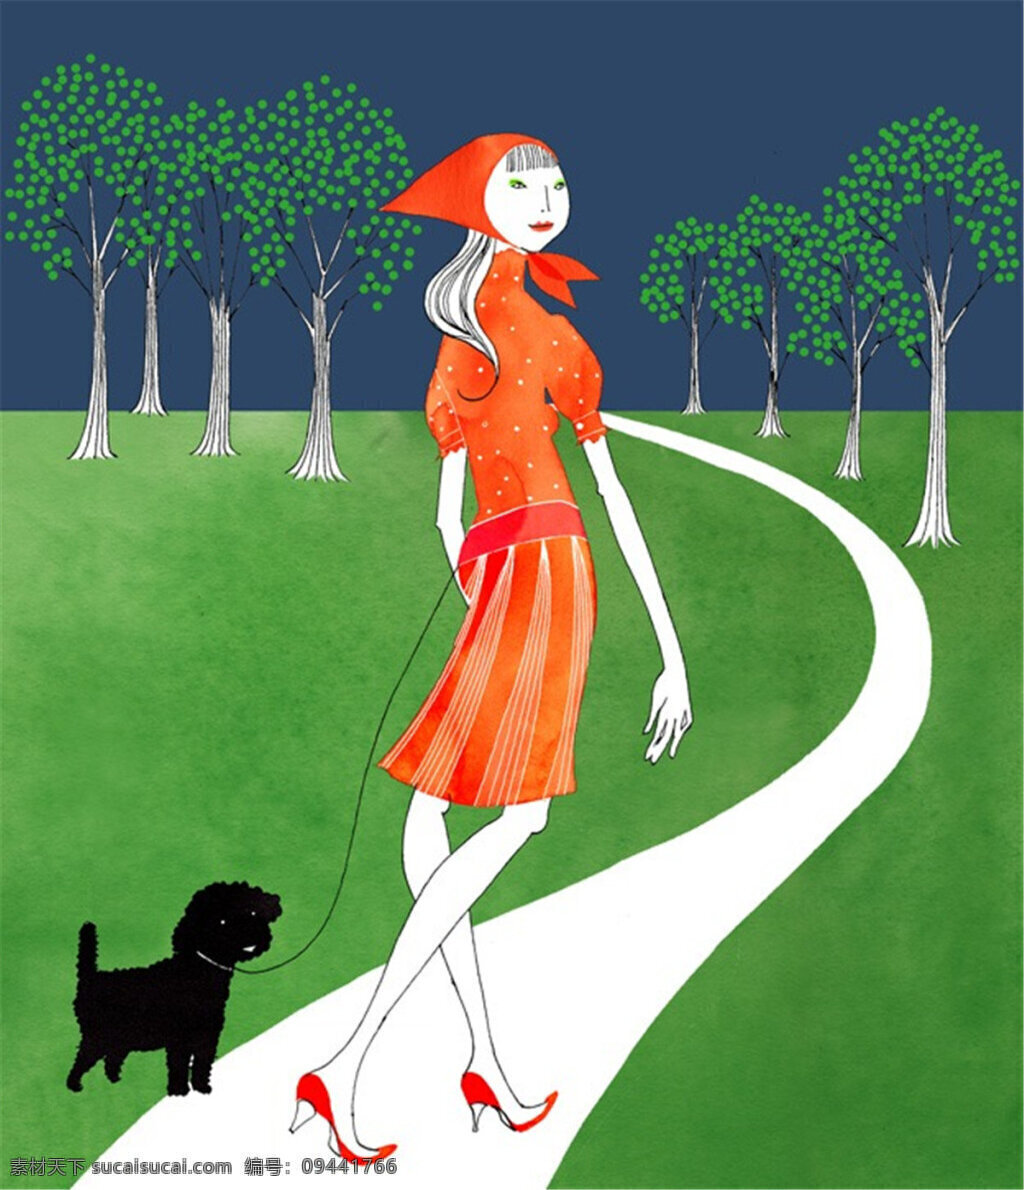 小红帽 连衣裙 设计图 服装设计 时尚女装 职业女装 职业装 女装设计 效果图 短裙 衬衫 服装 服装效果图